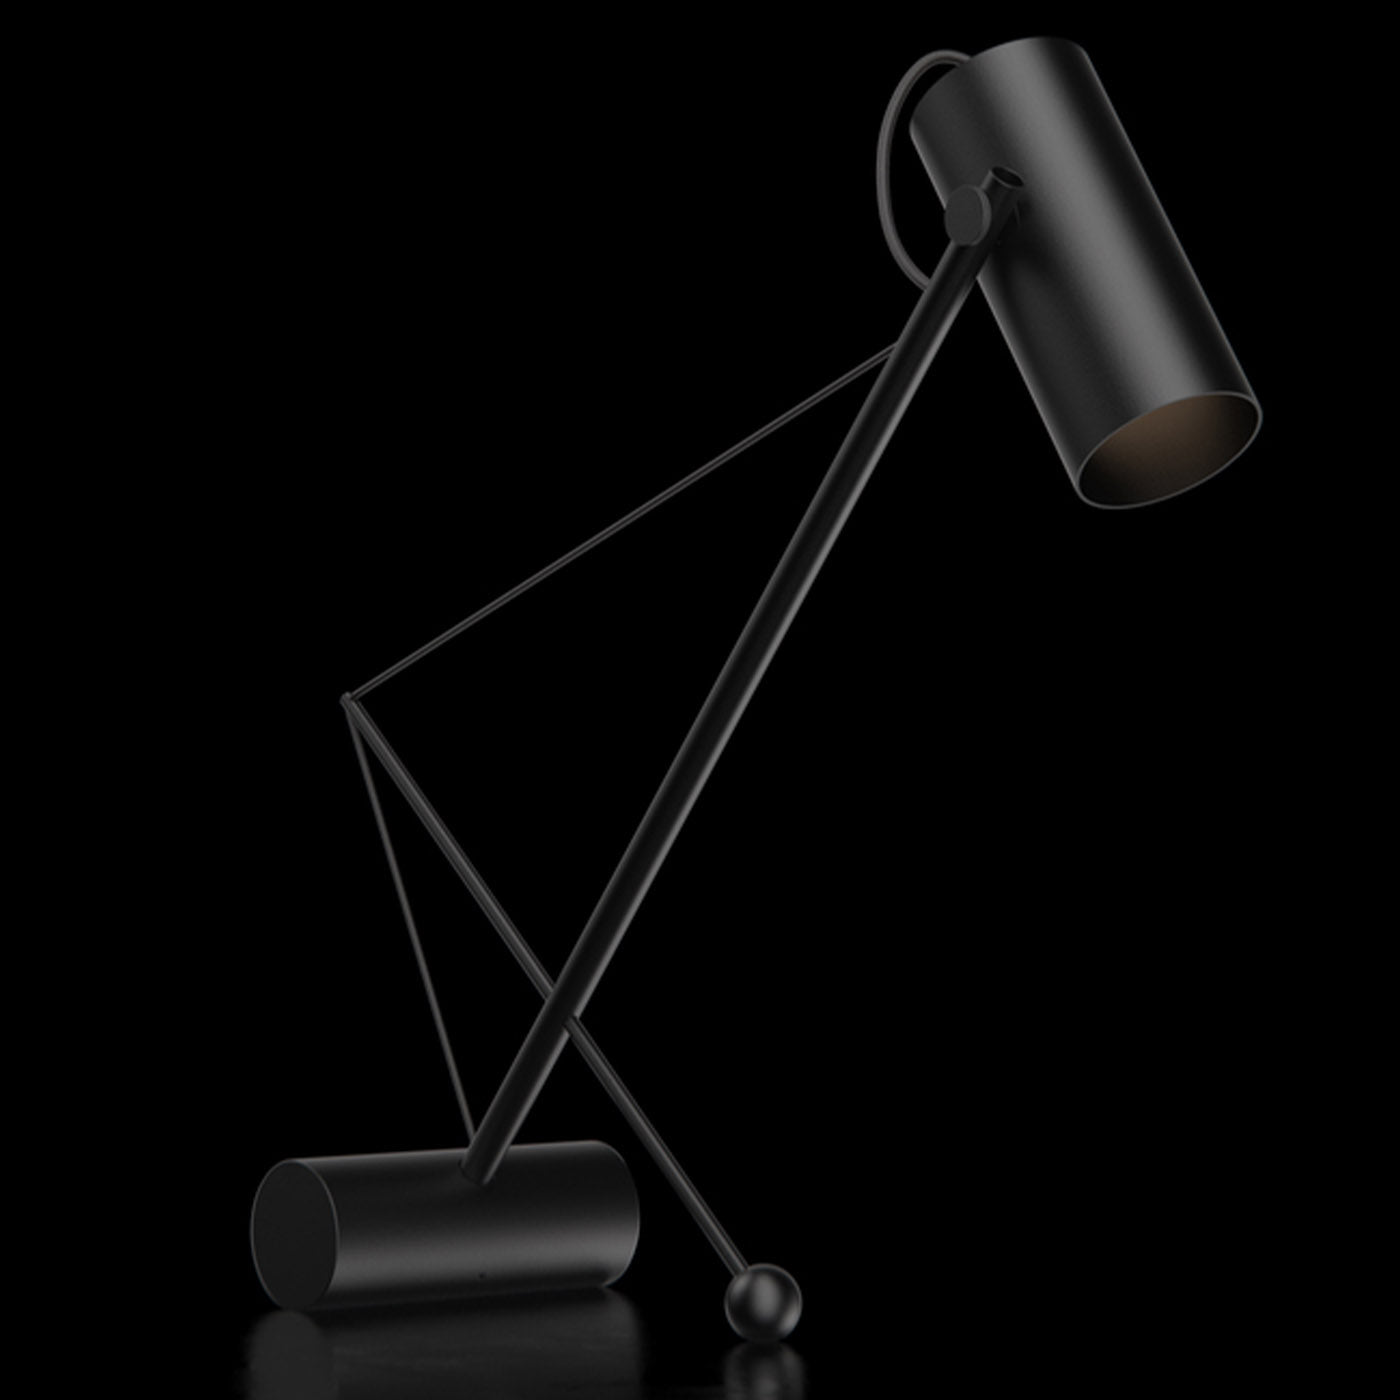 ED049 Black Desk Lamp - Alternative view 4